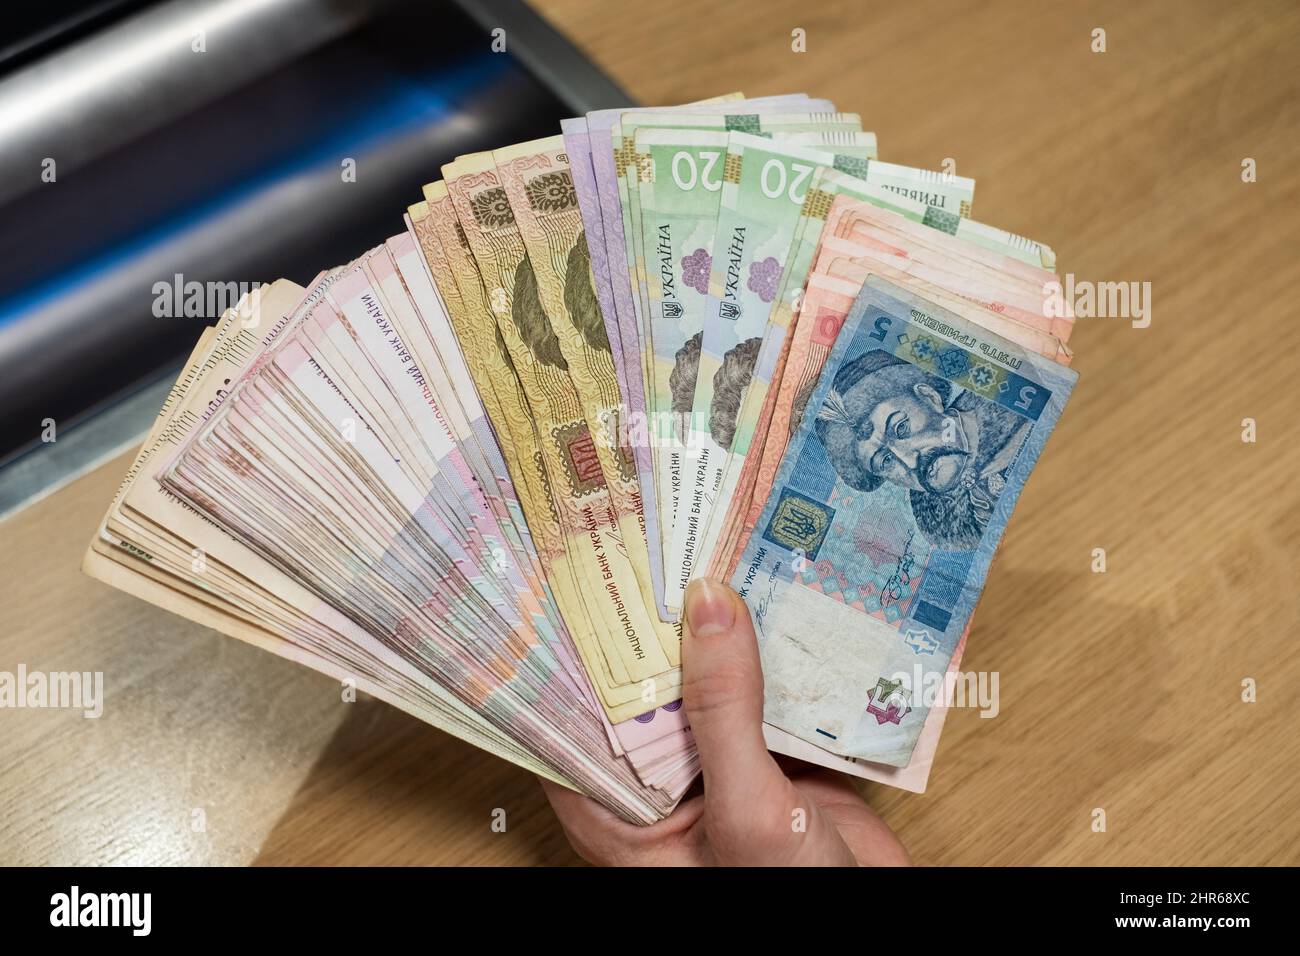 Ukraine monnaie Ukraine hryvnia papier notes (UAH). Grande pile de liquidités Ukraine grivna. Le système bancaire et le concept de crise économique de l'Ukraine. Banque D'Images